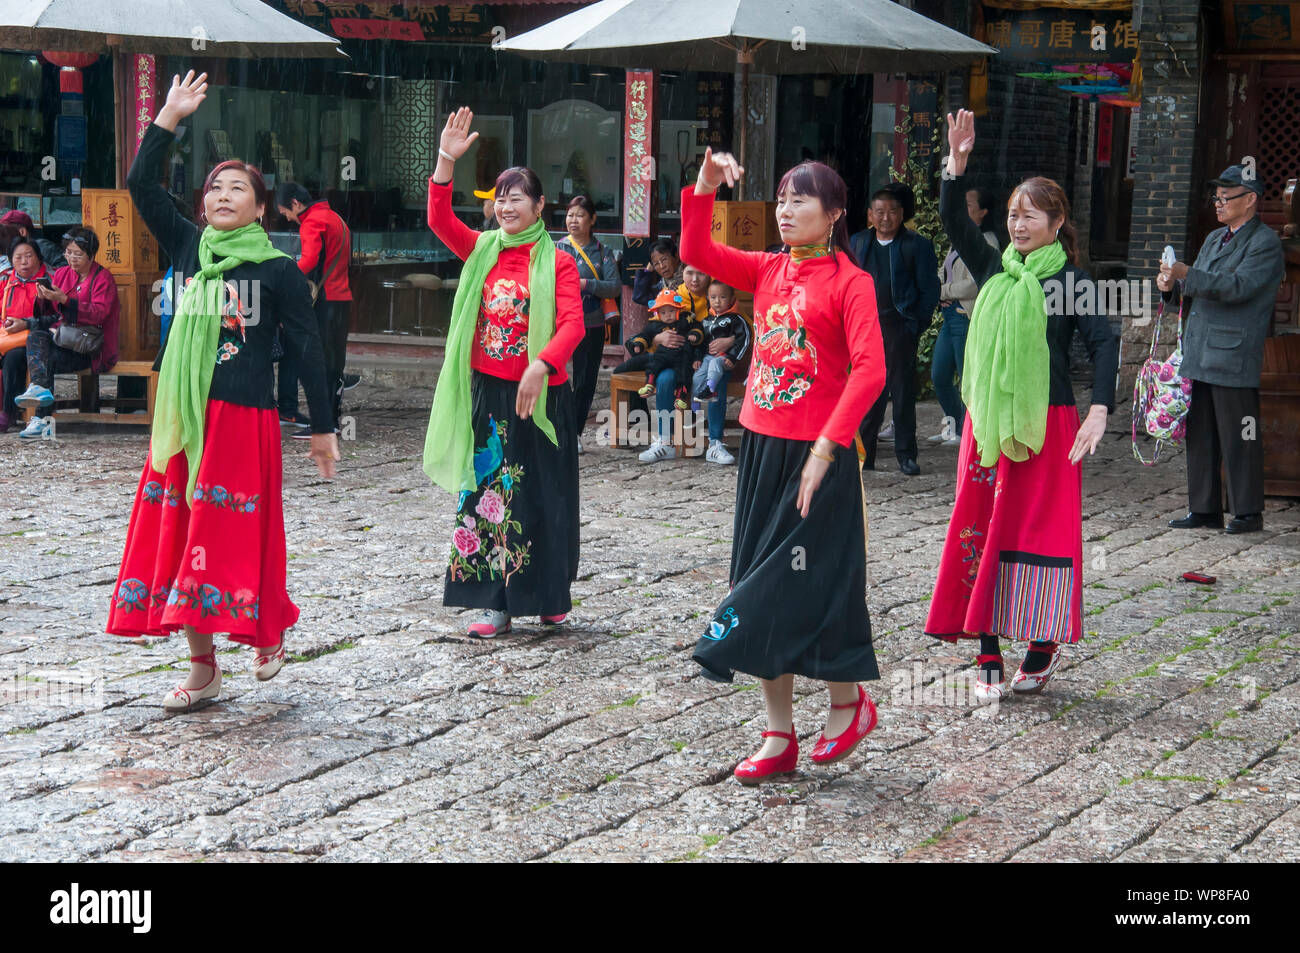 Les spectacles de danse folklorique féminin dans une place de la ville dans le vieux quartier de Lijiang, Yunnan, Chine Banque D'Images